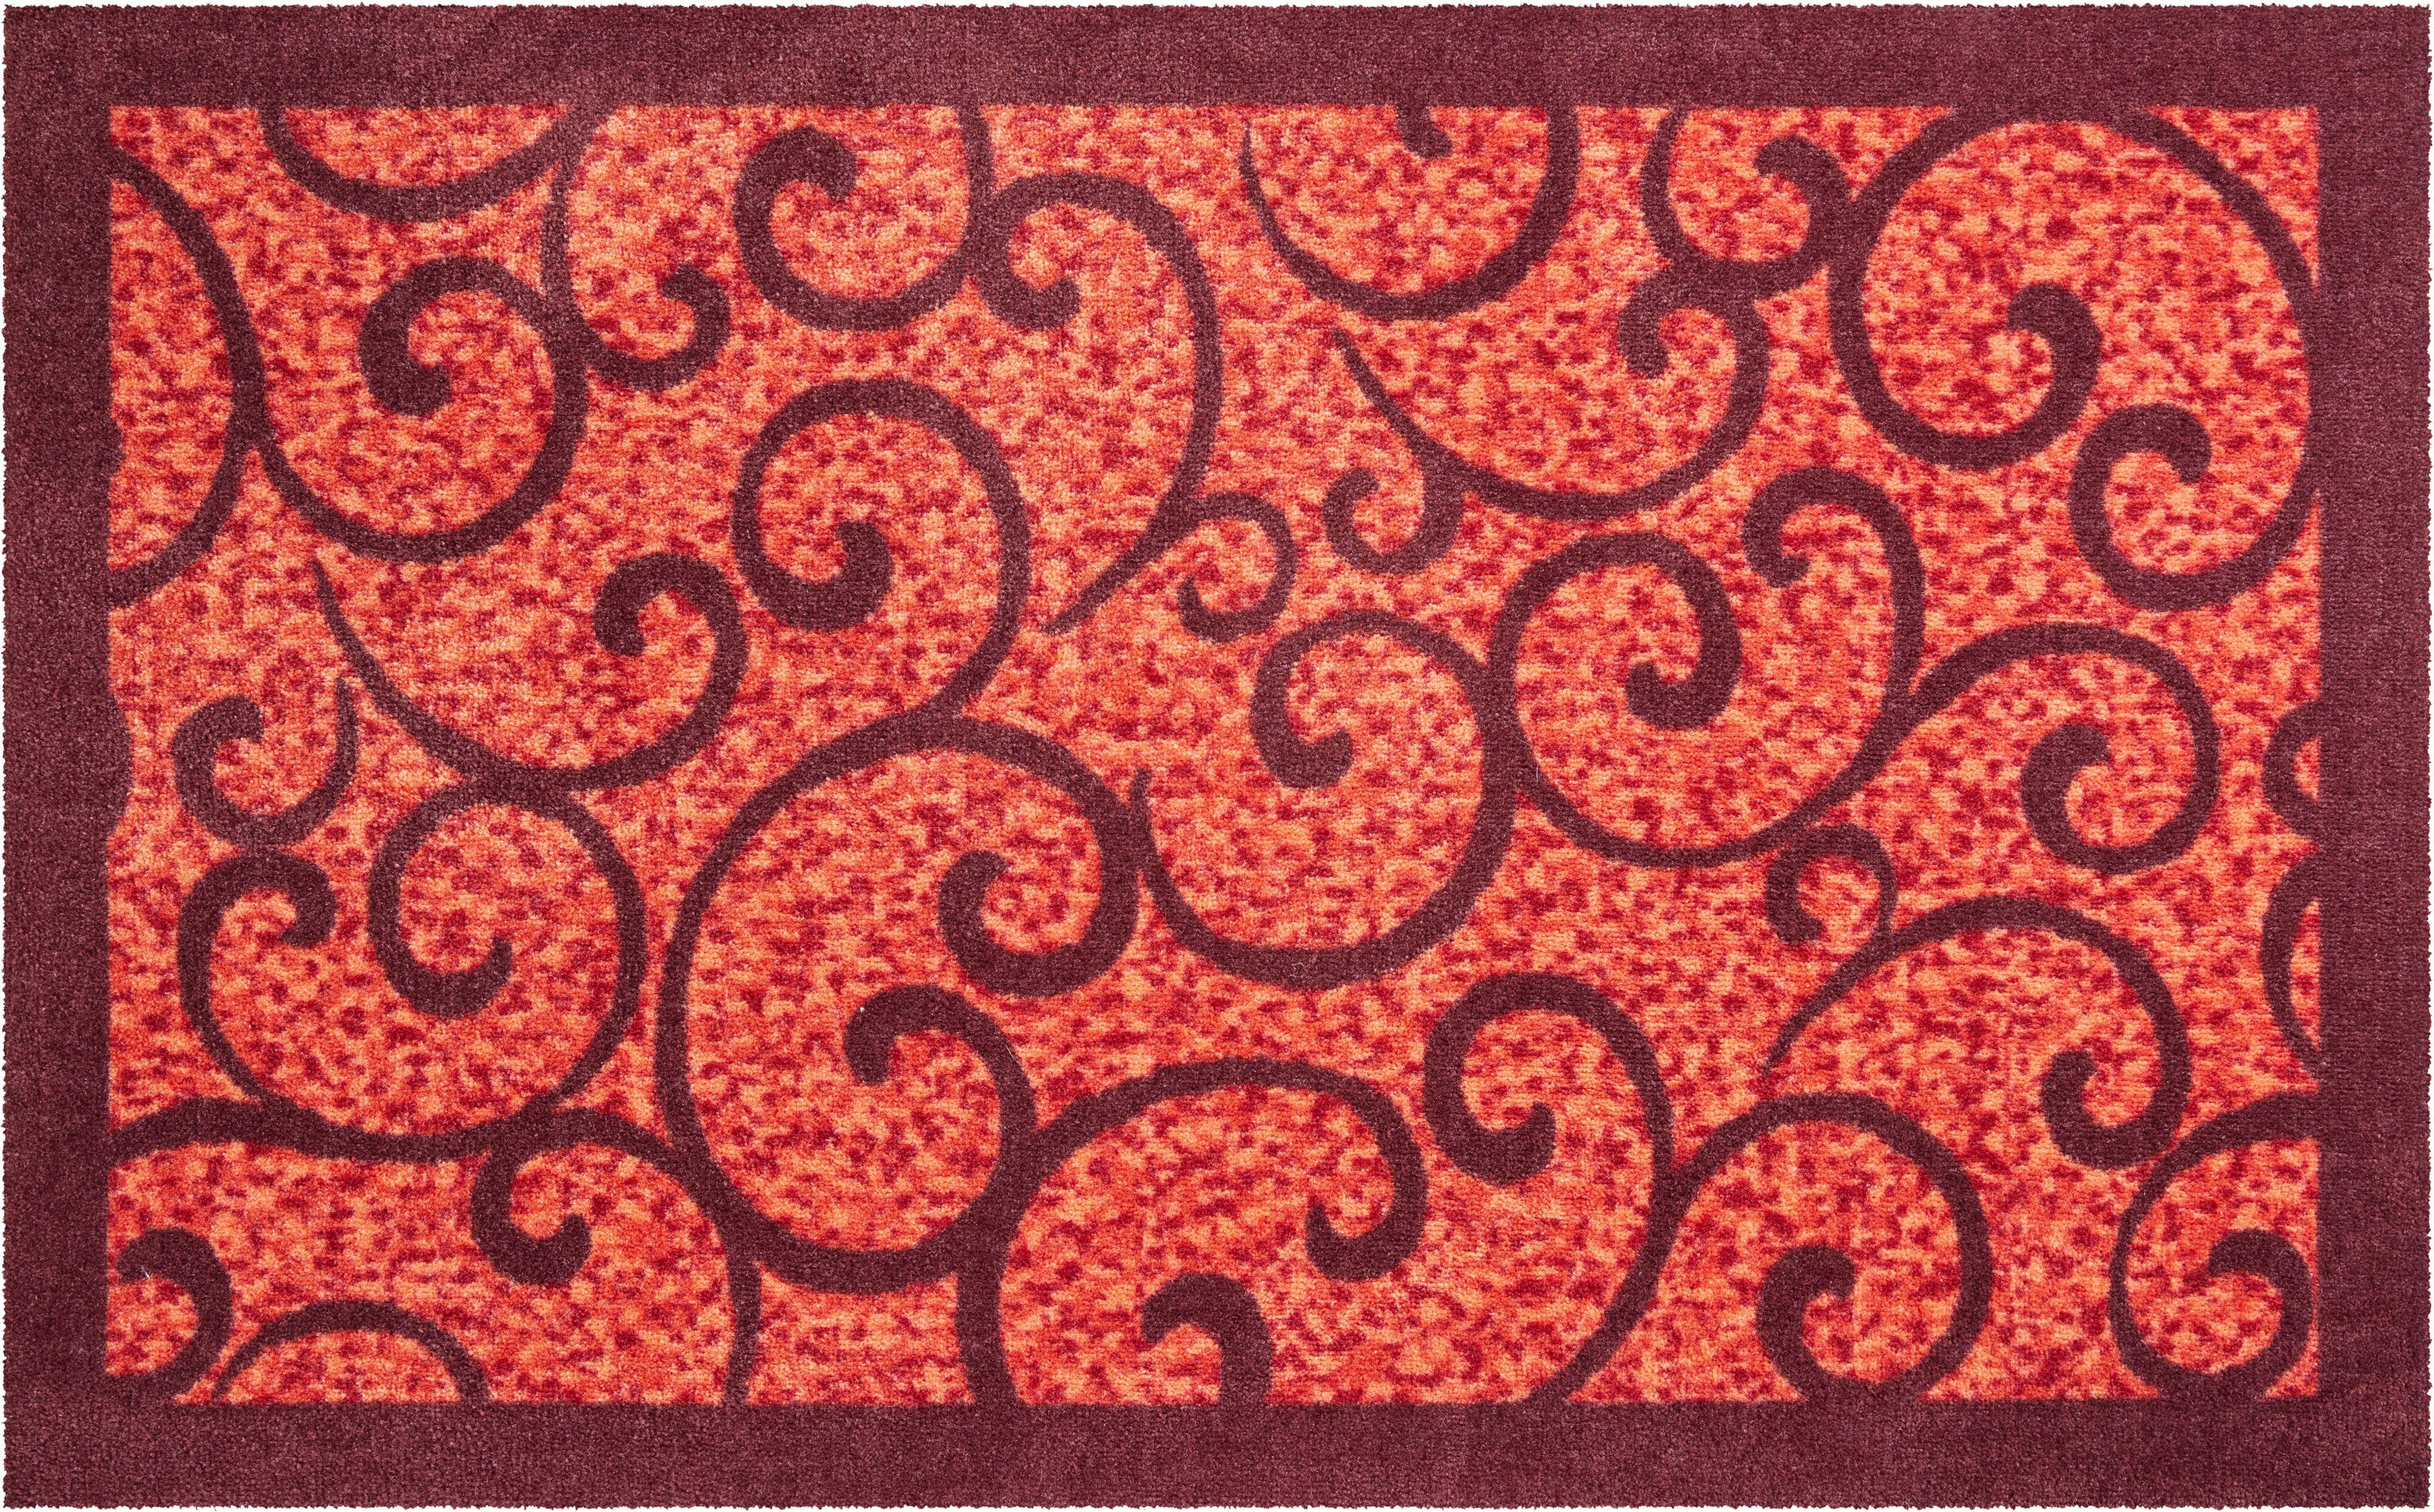 Höhe: und Outdoor In- Teppich Grillo, Teppich 8 mm, geeignet, Design, rechteckig, mit Grund, rot Bordüre verspieltes